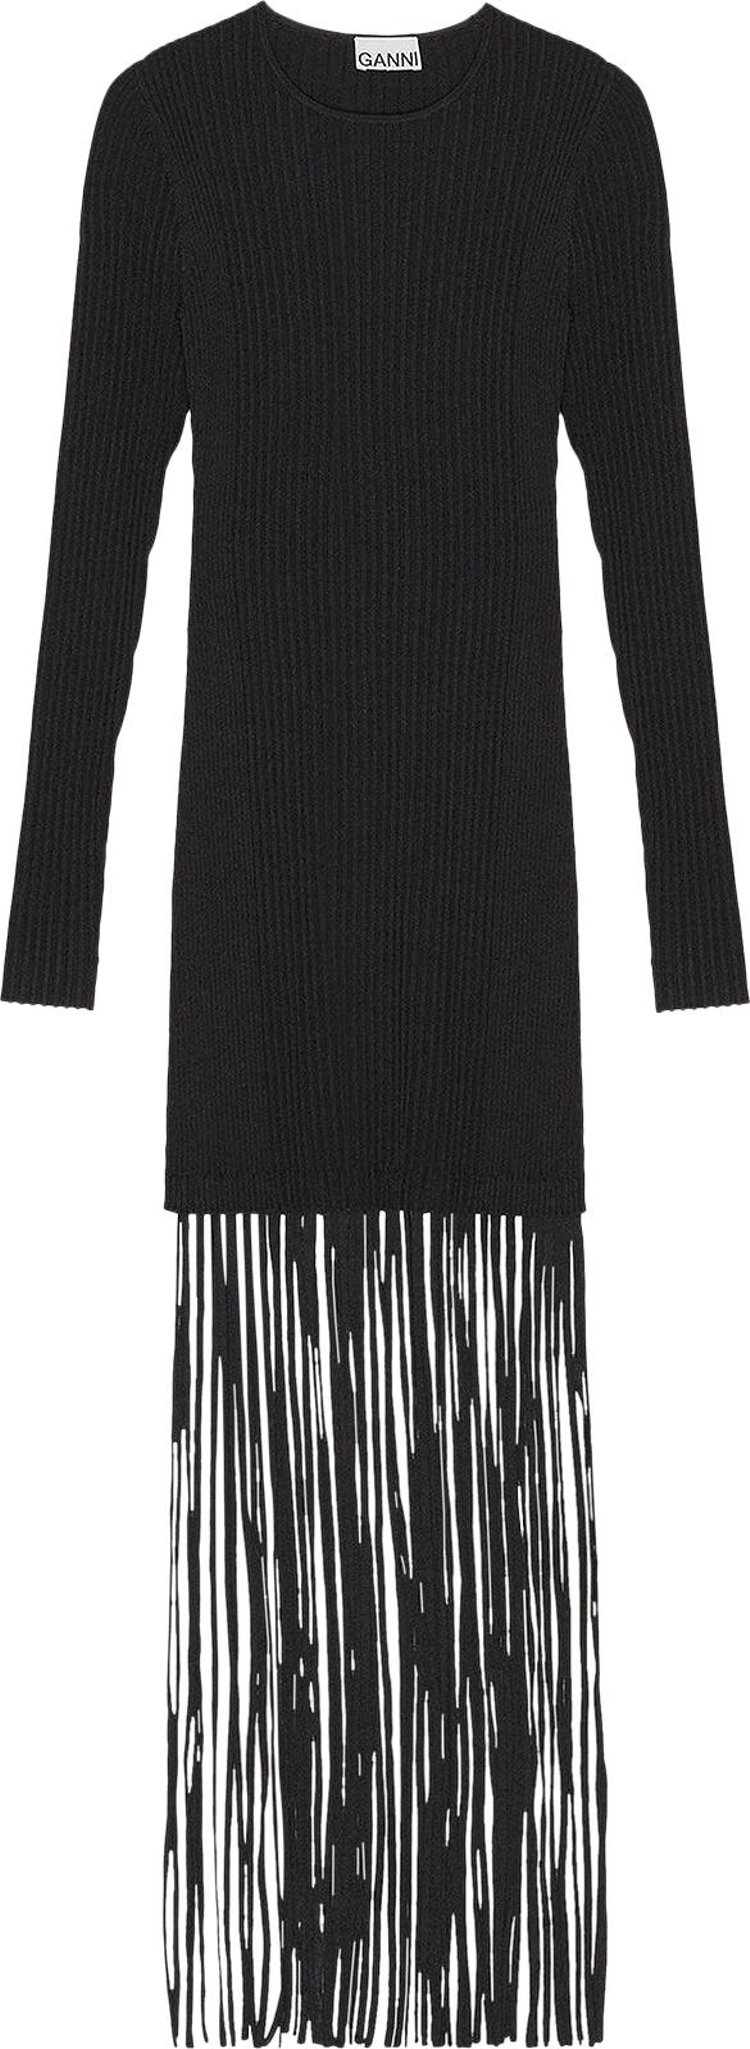 GANNI Knit Fringe Mini Dress 'Black'